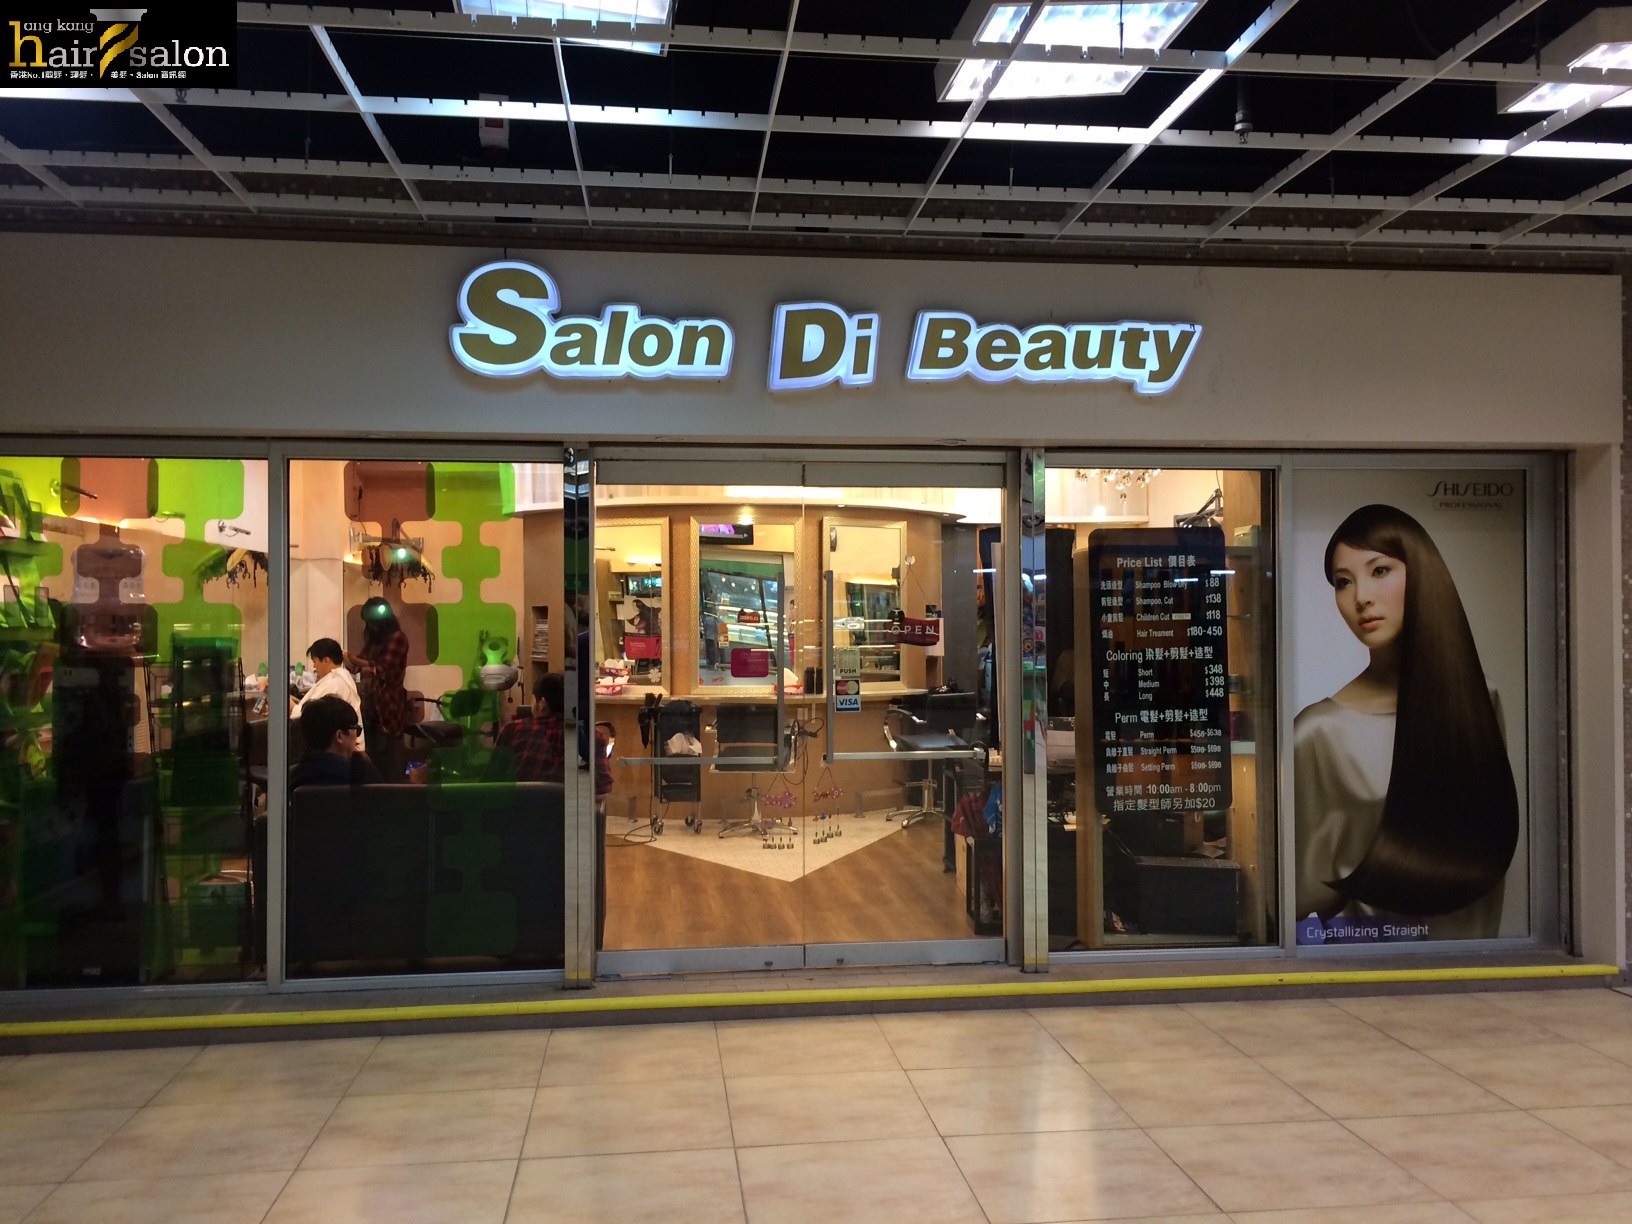 髮型屋 Salon: Salon Di Beauty 集美軒髮廊 (龍蟠苑商場)